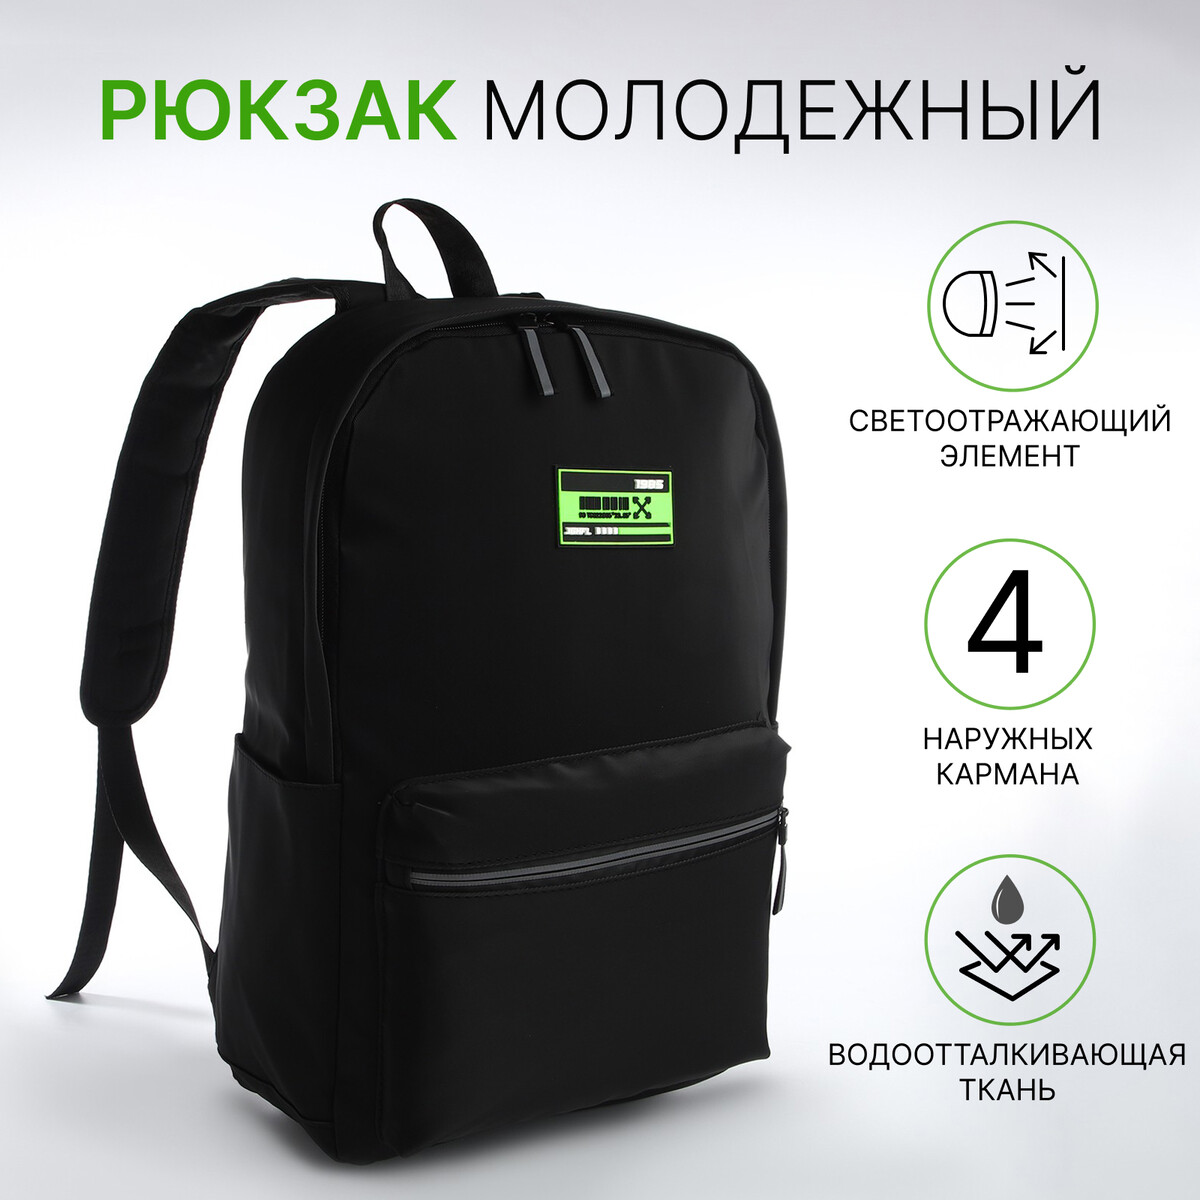 Рюкзак молодежный из текстиля на молнии, 2 кармана, цвет черный/зеленый рюкзак молодежный из текстиля на молнии 3 кармана сумка держатель для чемодана зеленый